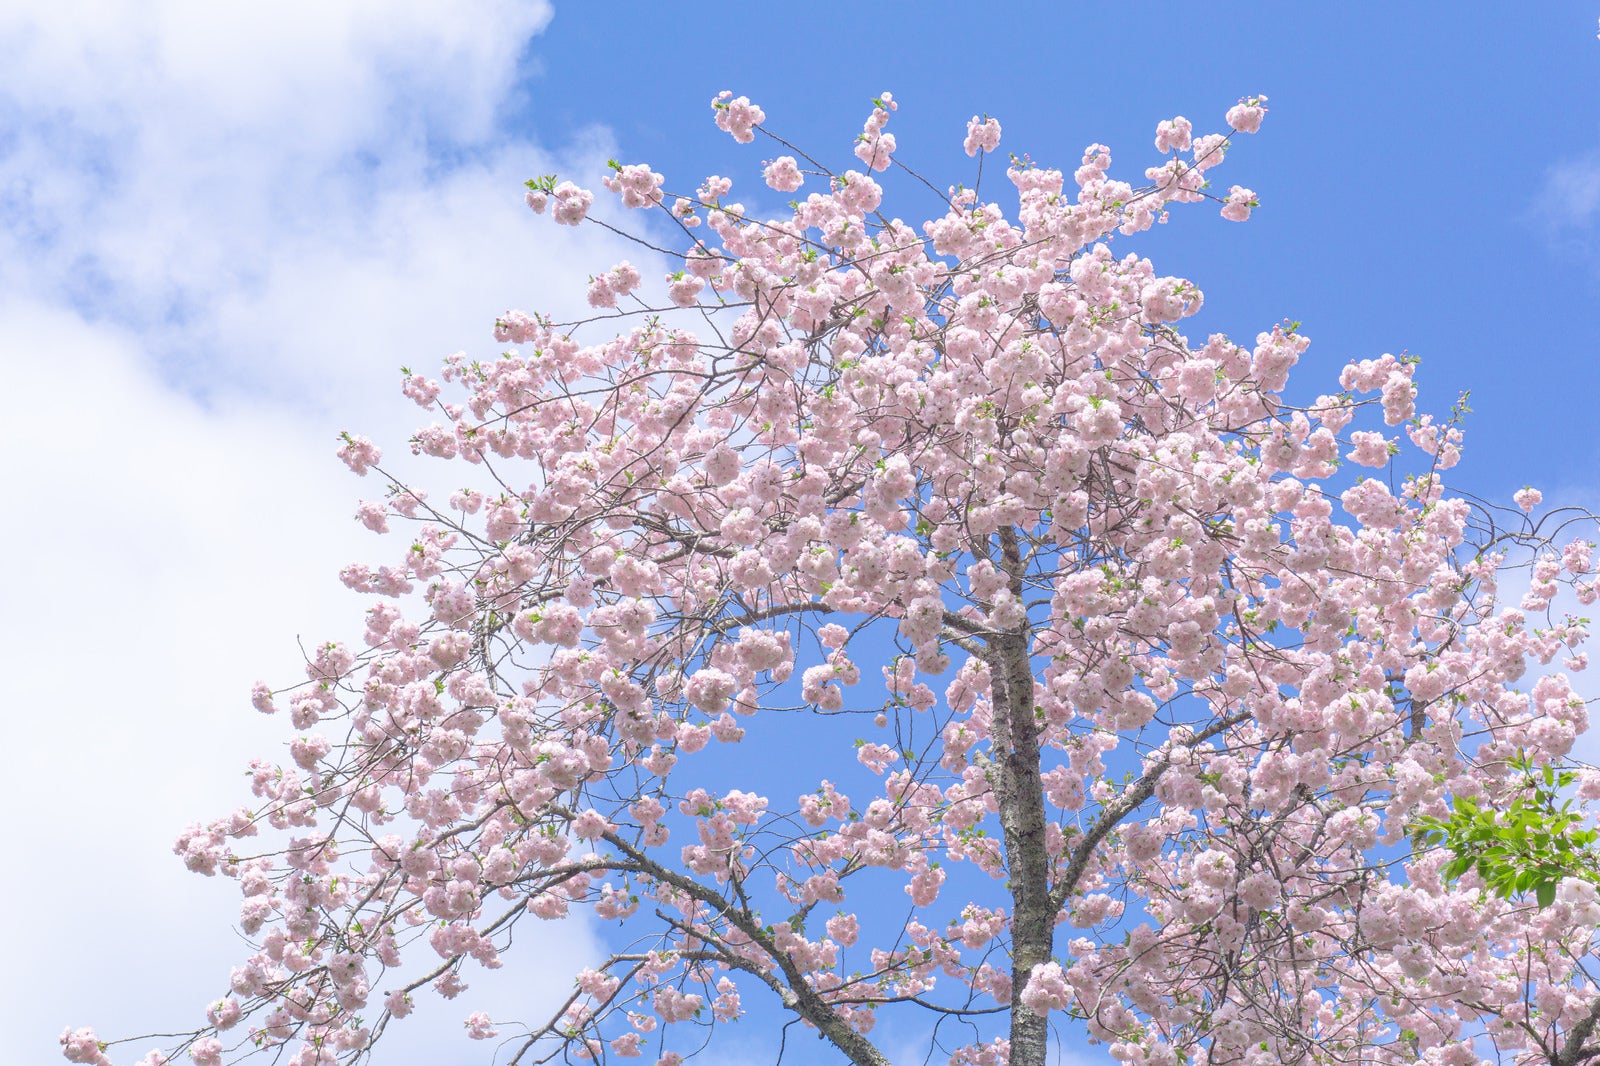 「球形に集まって咲く姿が可愛らしい手毬桜」の写真